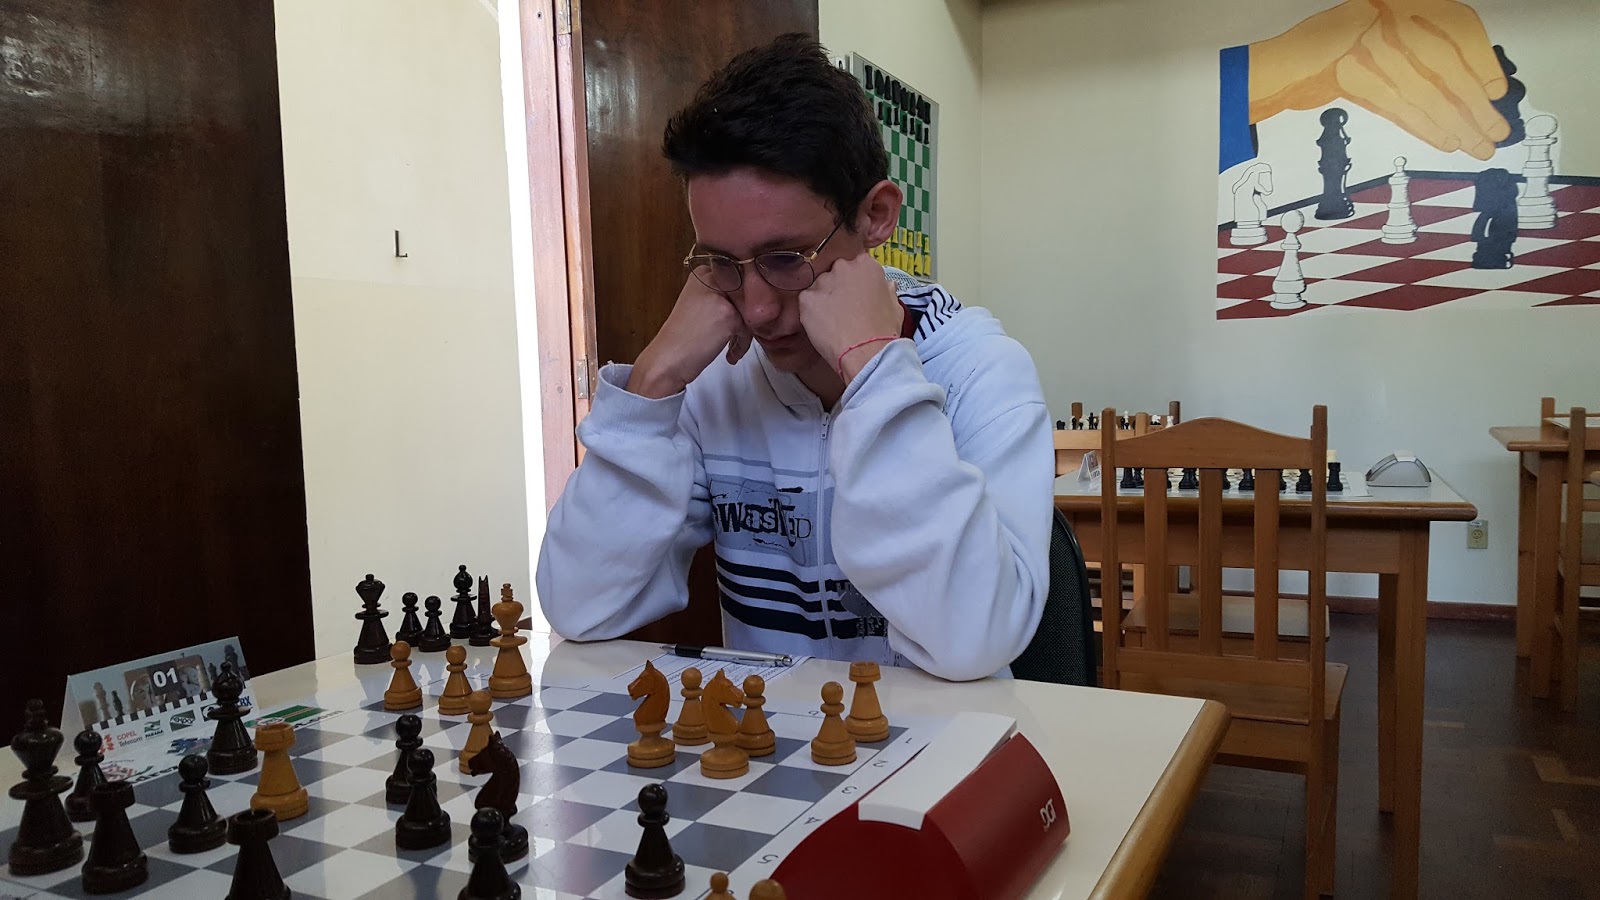 Federação de Xadrez do Paraná - Simuntânea com o GM Jaime Sunye